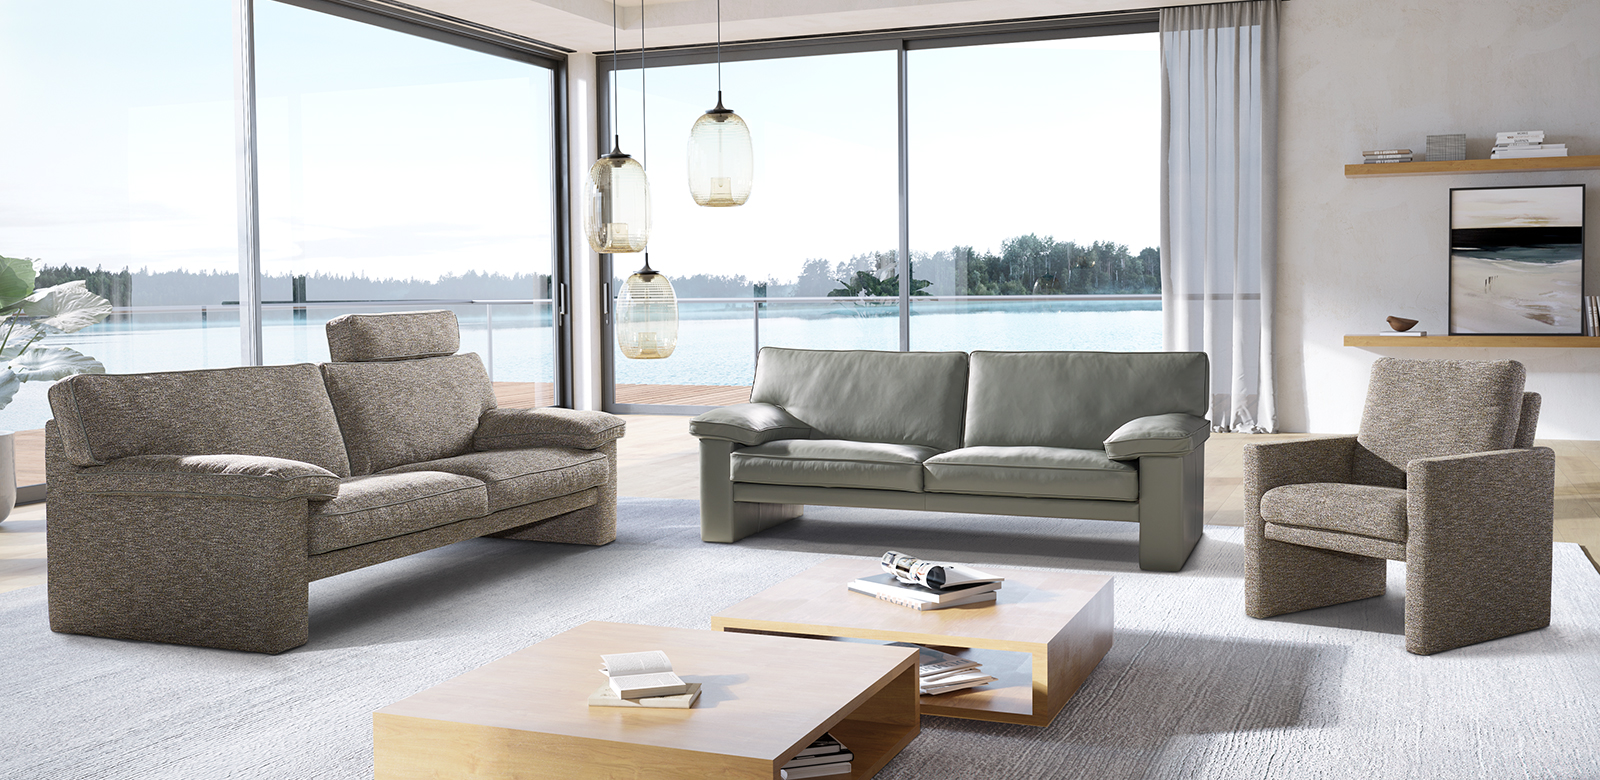 CL360 meubelcombinatie van 2,5-zits en fauteuil in grijsbruine stof en 2,5-zits in grijsgroen leer in moderne woonkamer aan het meer.